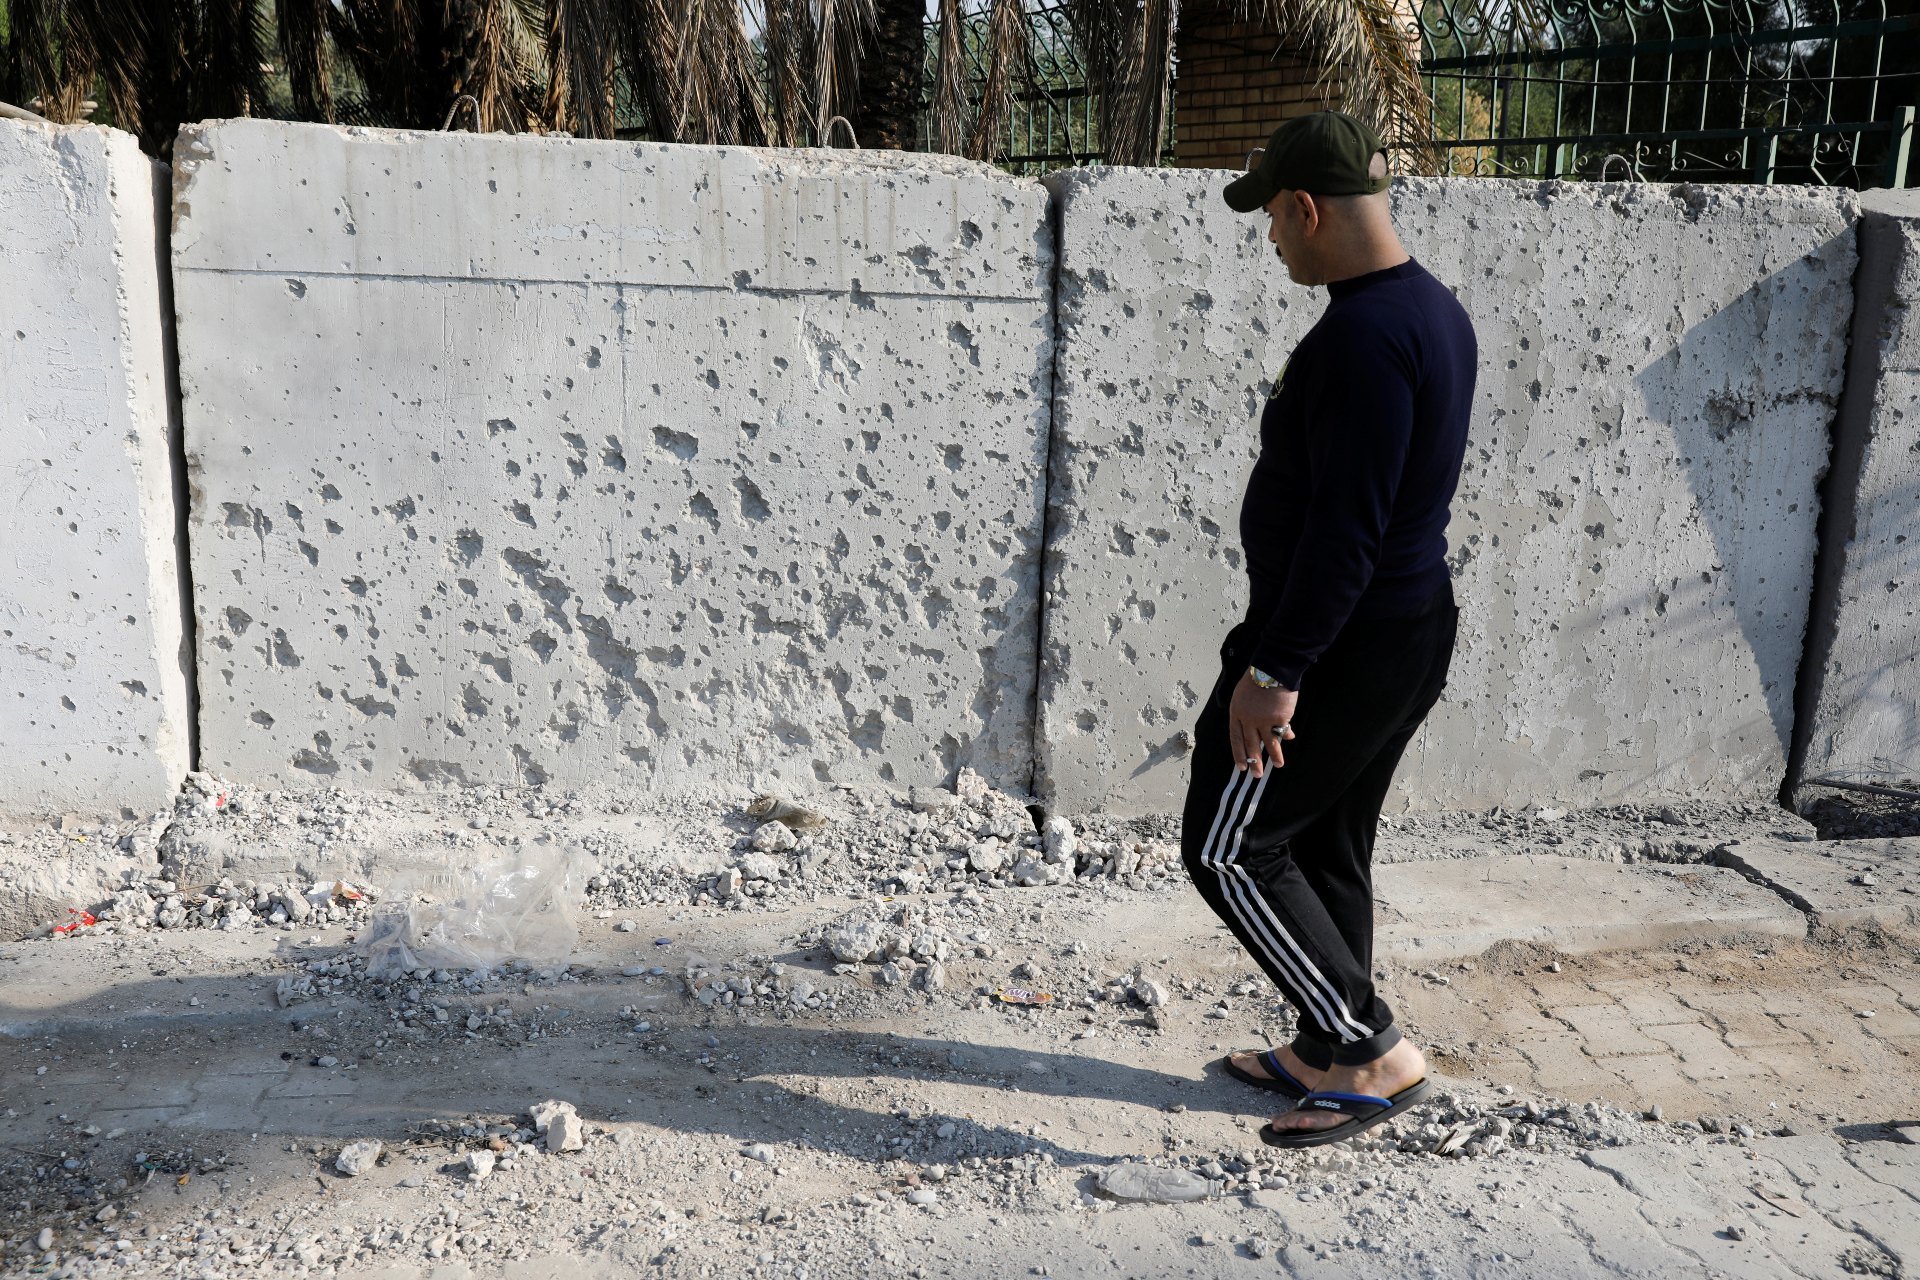 Un homme observe les dégâts d’une attaque à la roquette dans la zone verte de Bagdad (Reuters)